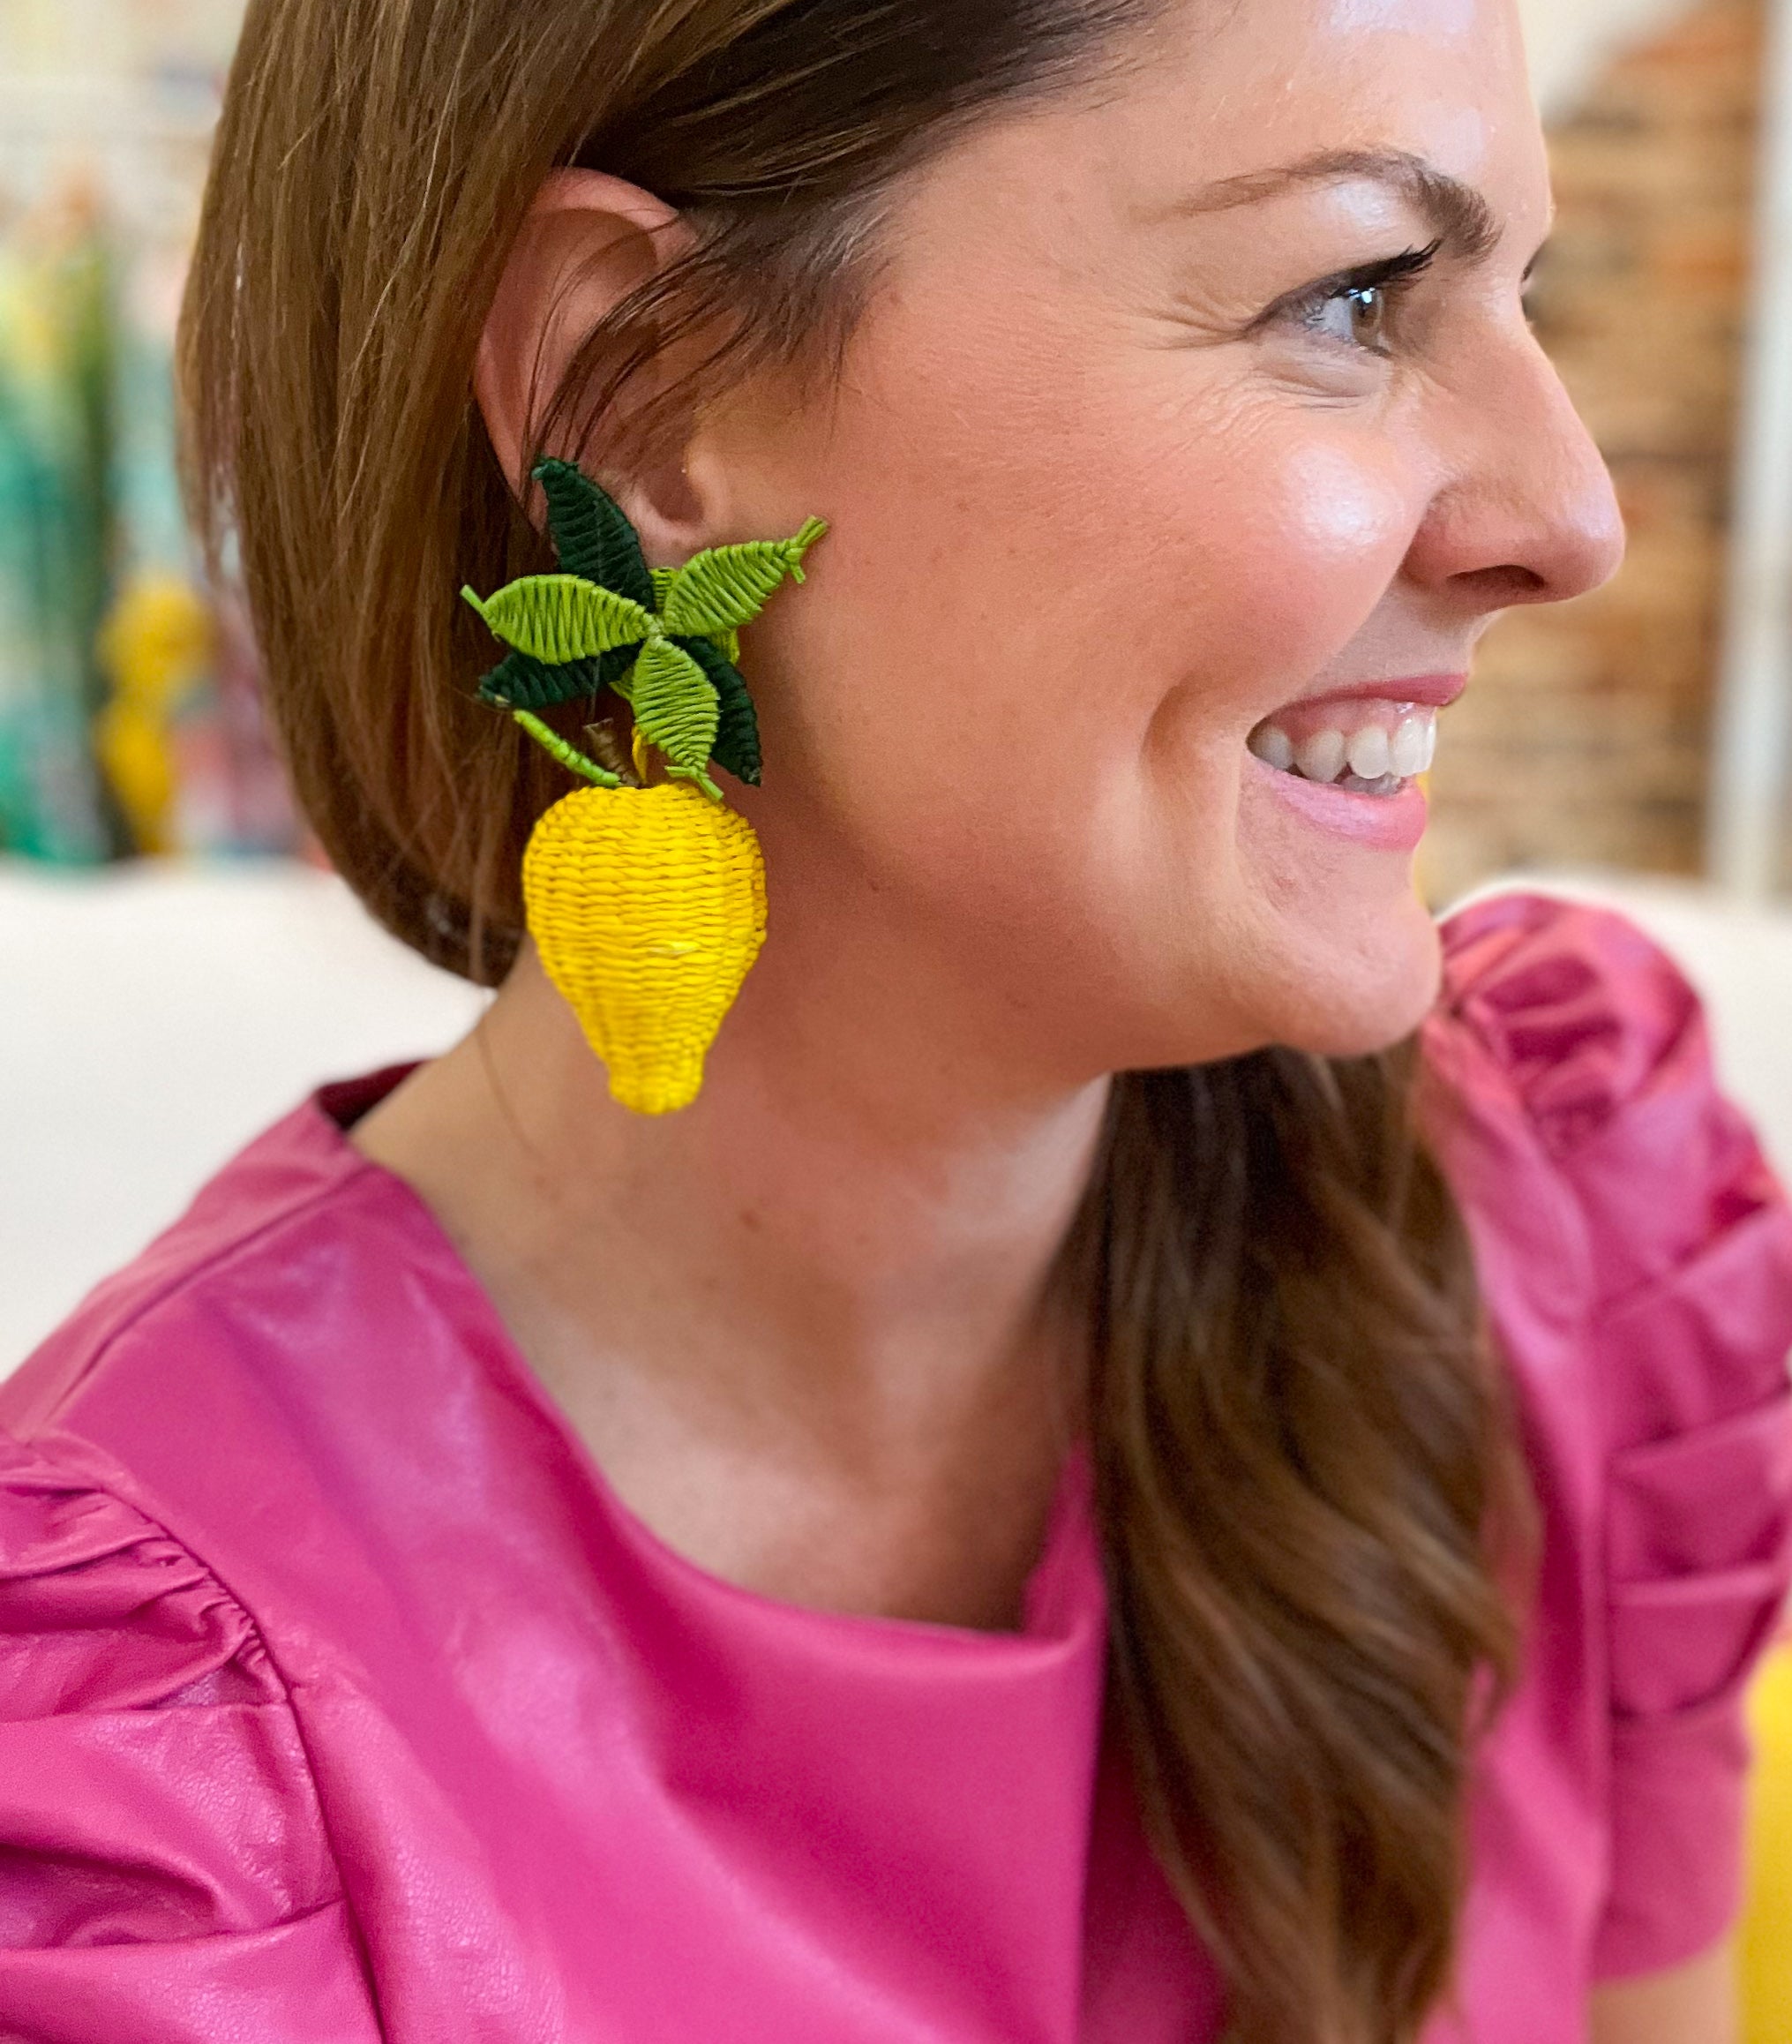 Large Frutas Earrings